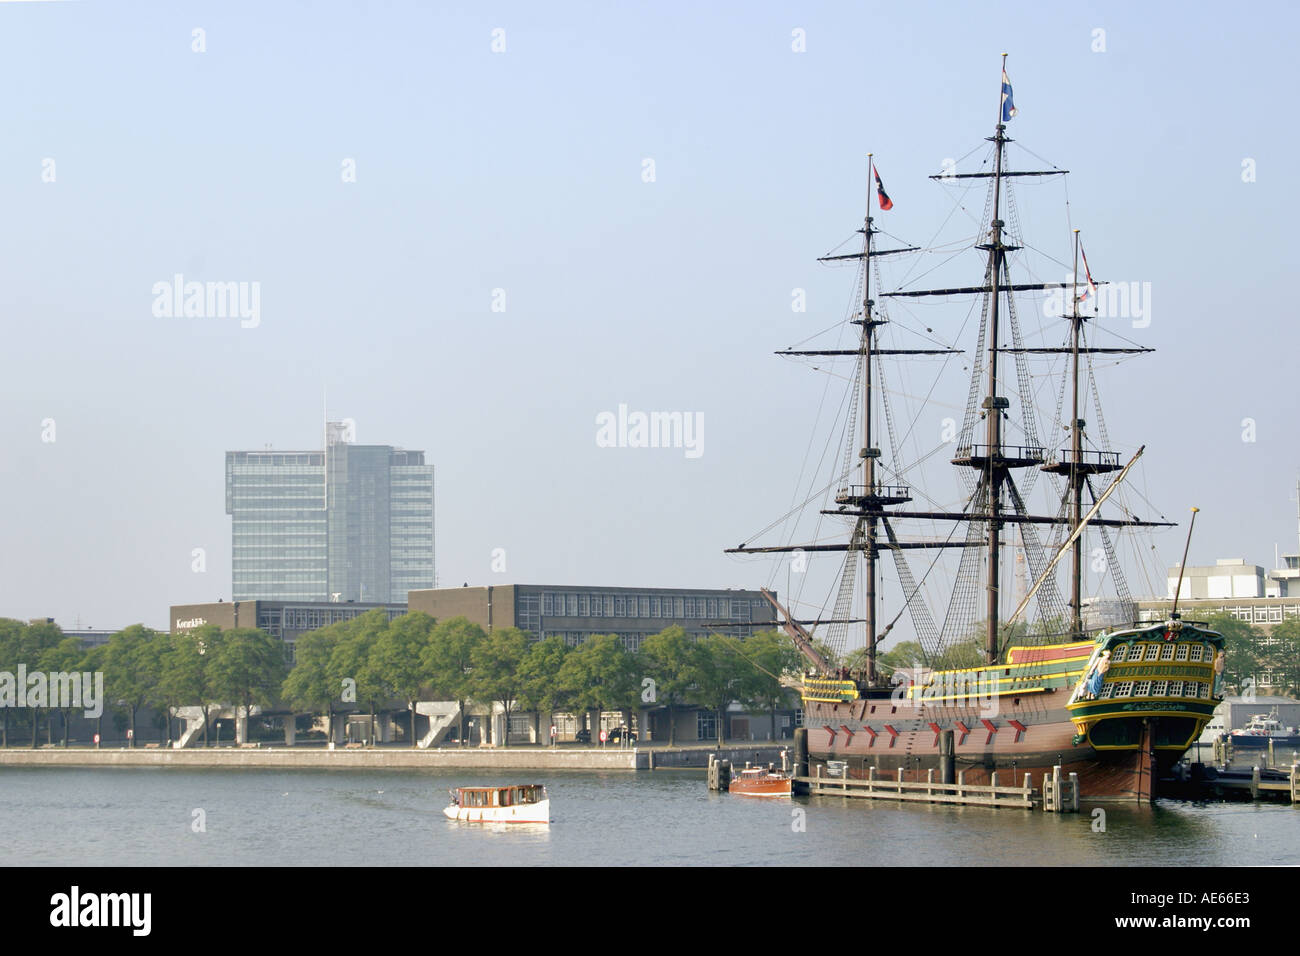 Amsterdam, Hollande. de Amsterdam à l'scheepvaart Museum. réplique du navire à voile du 18ème siècle Banque D'Images